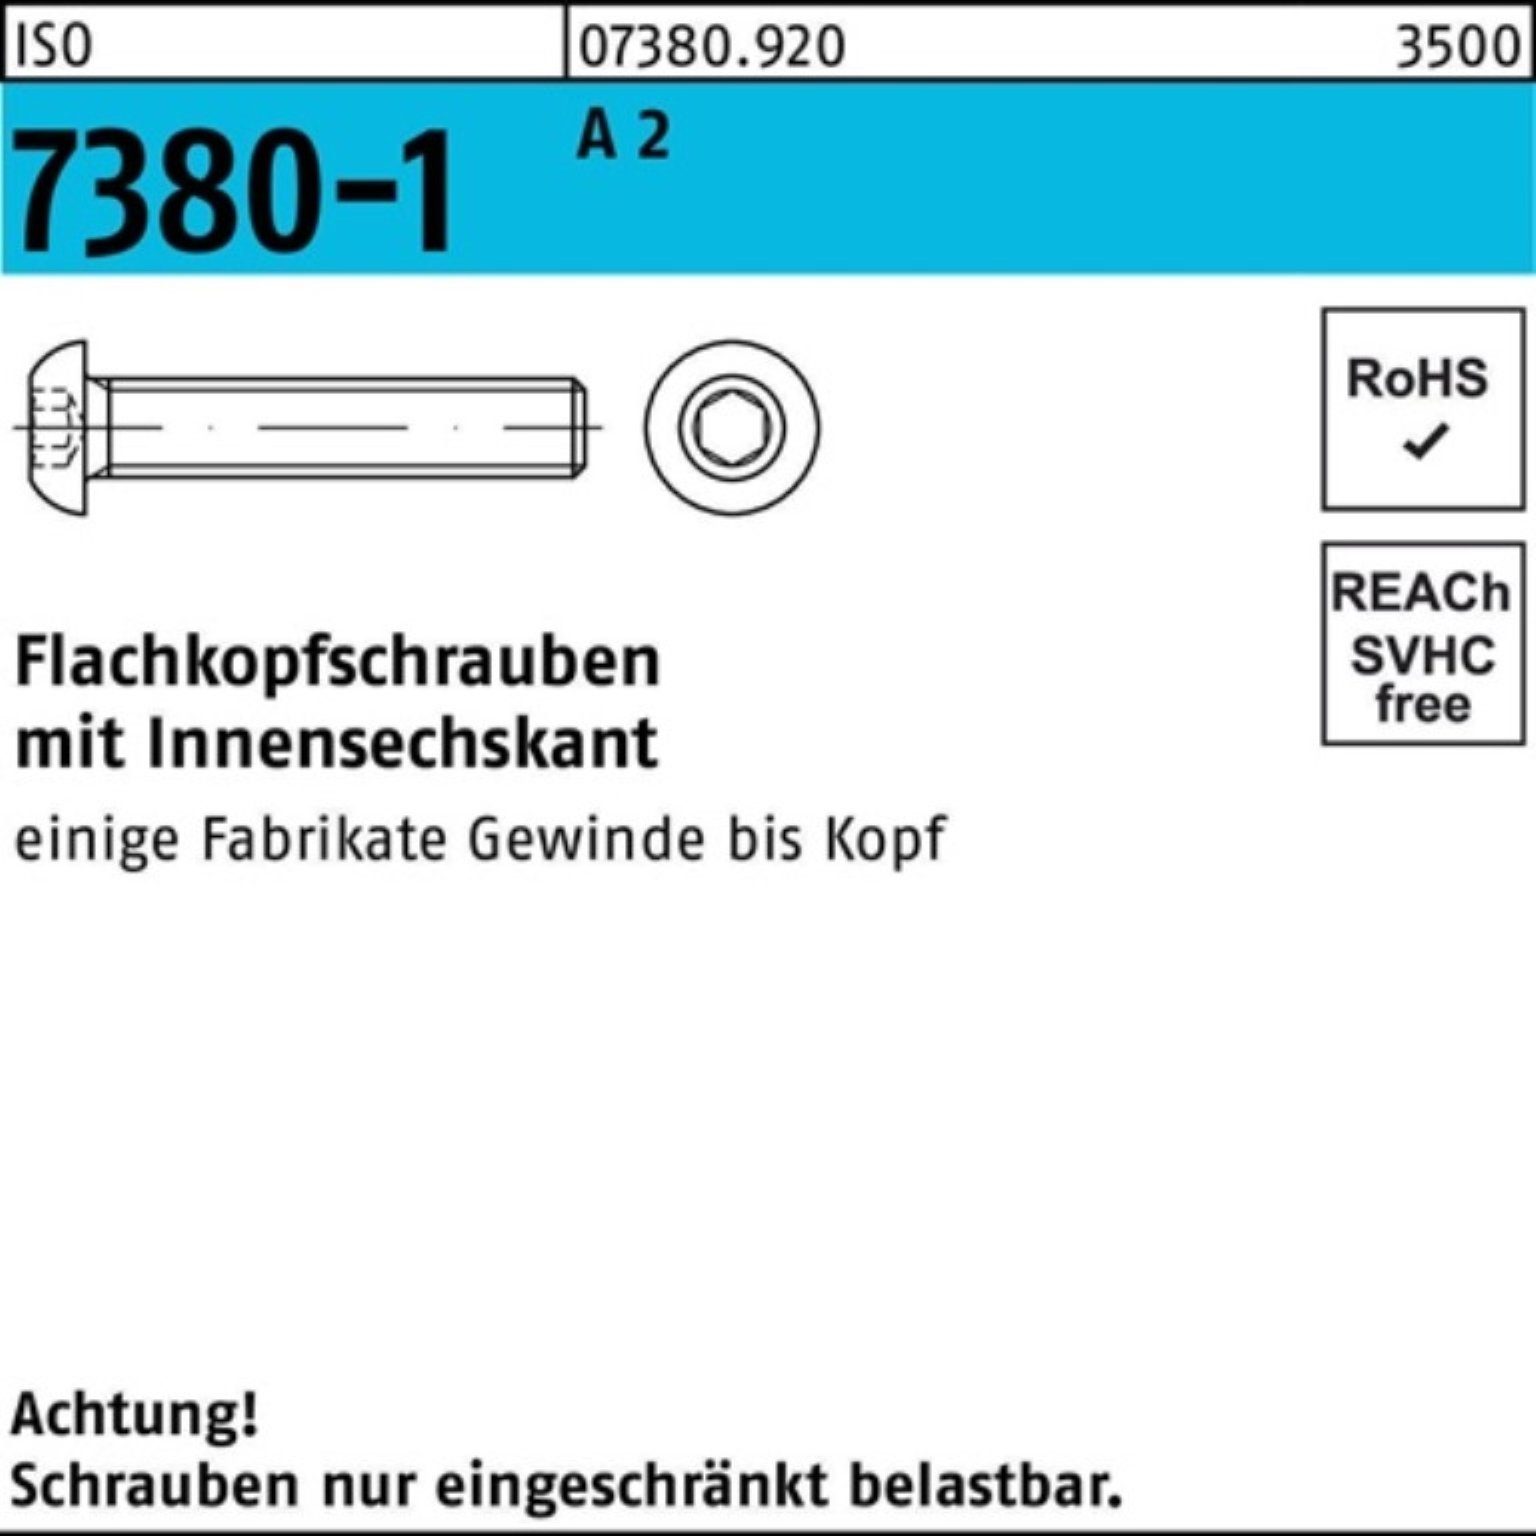 M4x Pack 25 Schraube ISO 7380-1 2 Reyher 500er 500 Flachkopfschraube A Stüc Innen-6kt